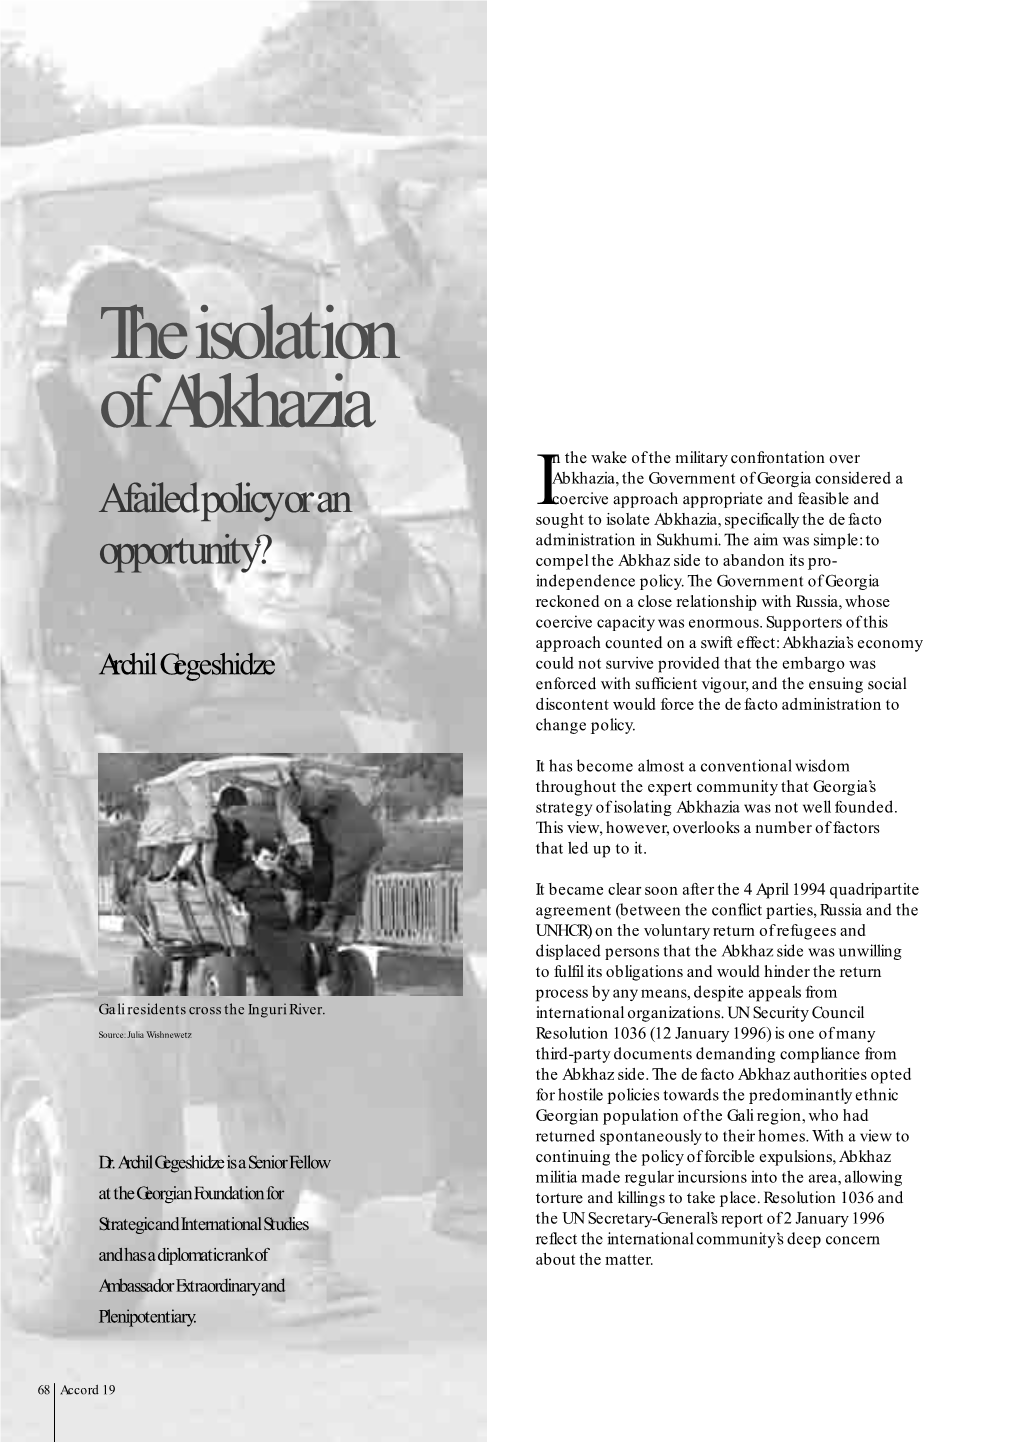 The Isolation of Abkhazia